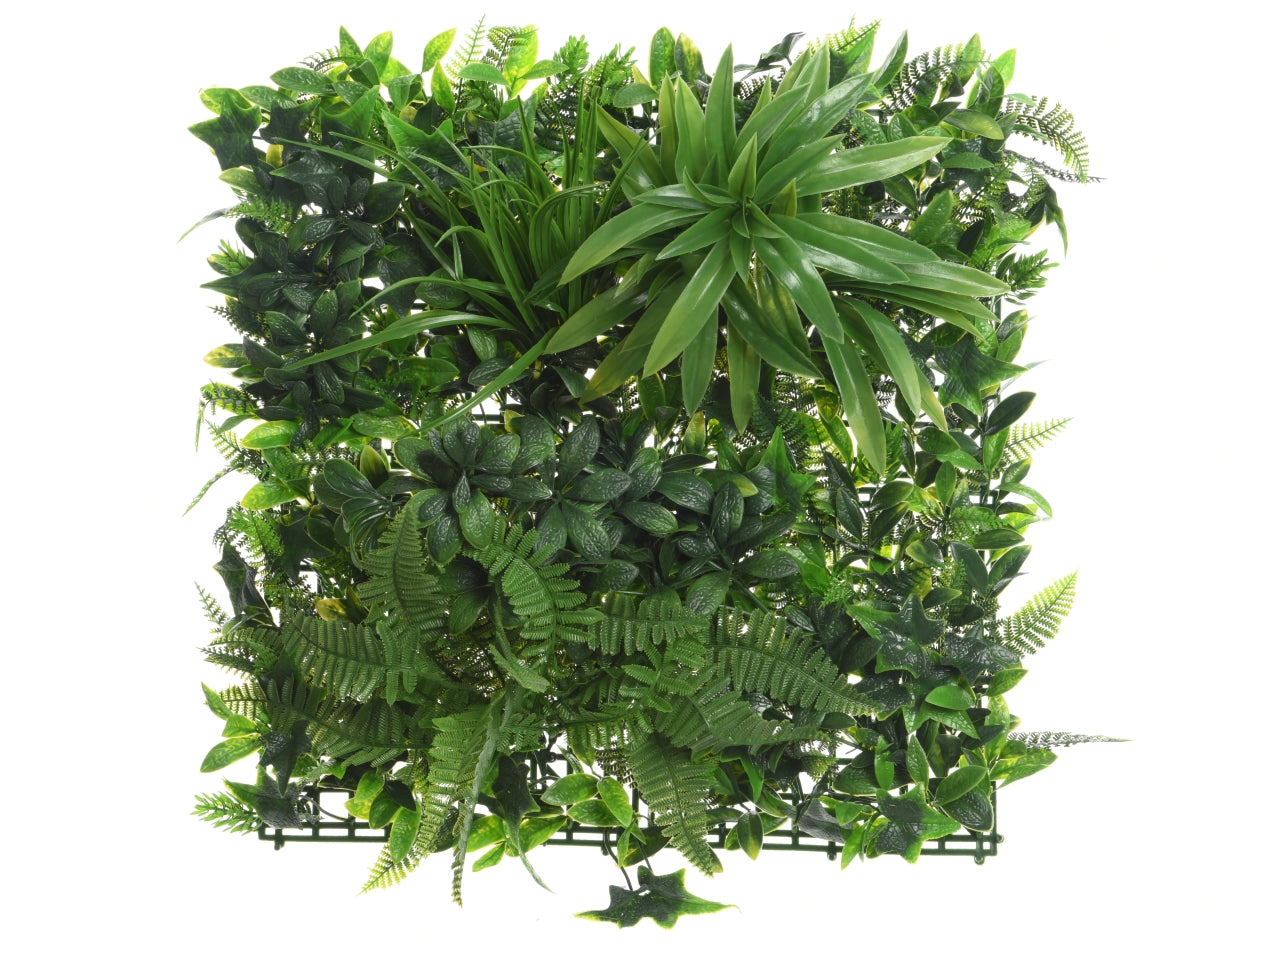 Pannello di siepe artificiale per parete verde, decorazione da parete tropicale verde - 100x100x8 cm, resistente all'acqua e uv, per uso esterno - Kaemingk